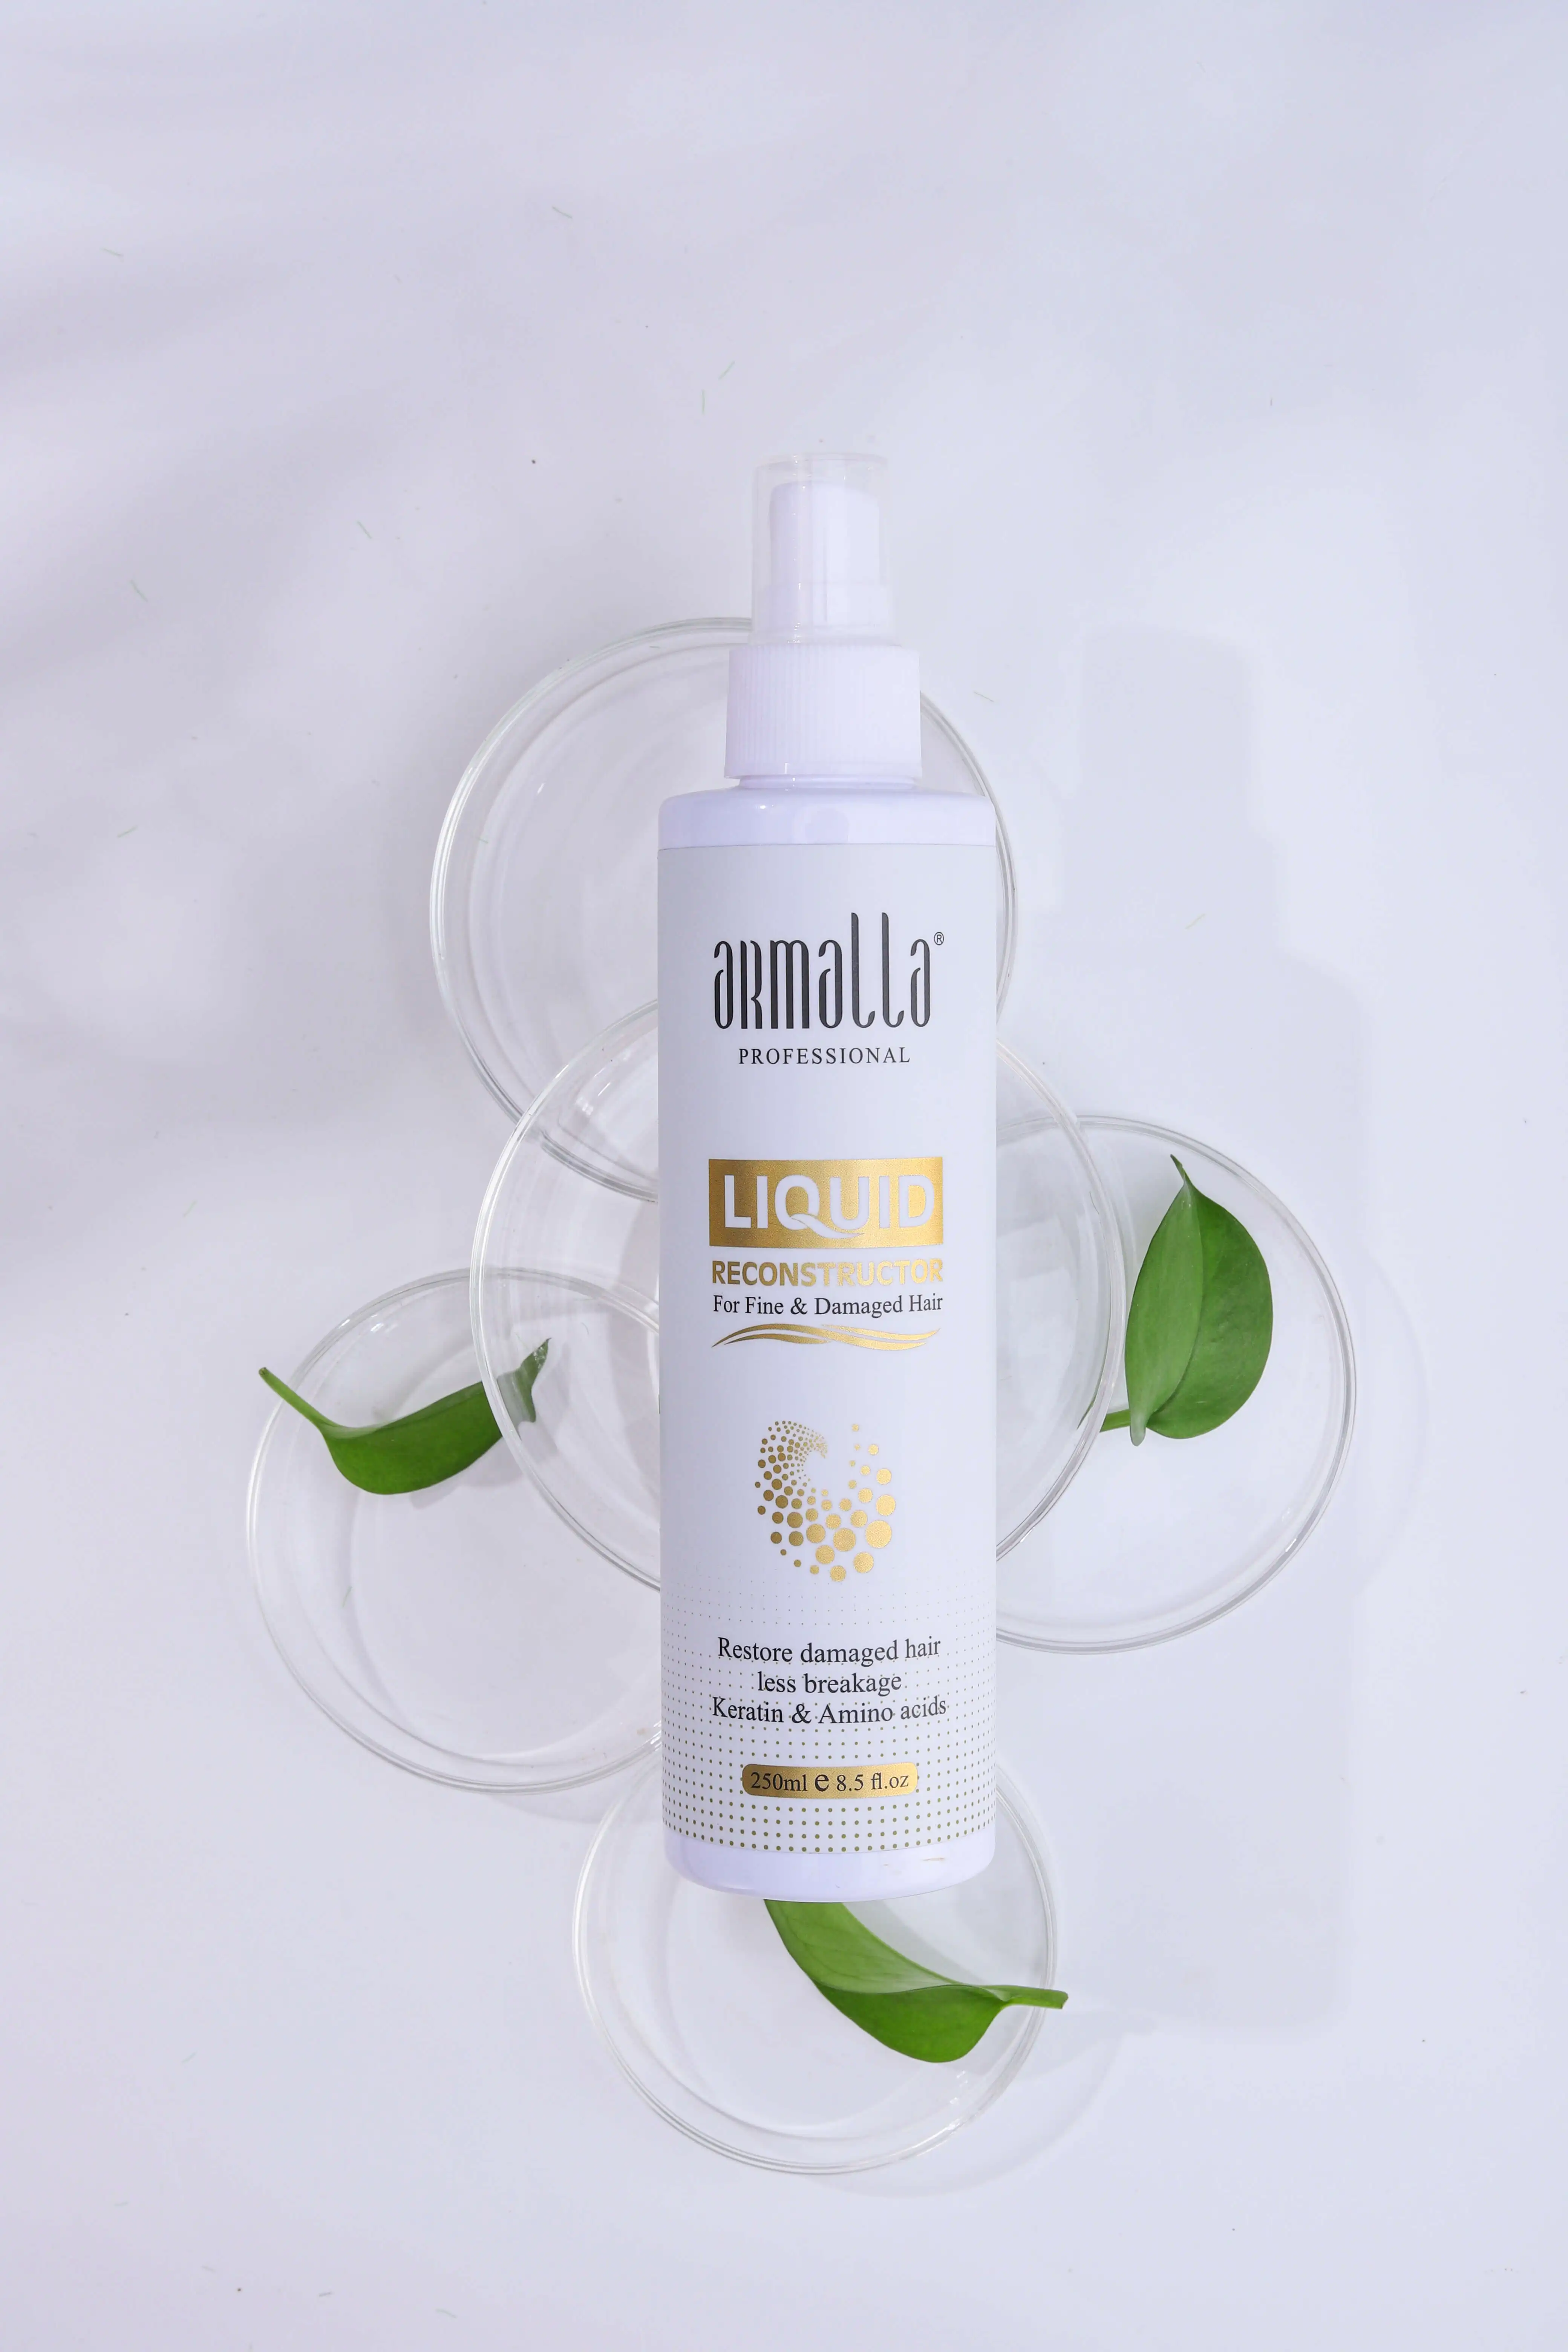 Armalla Keratin & Amino acids Hair Spray Restore damaged hair Liquid Reconstructor Hair Spray